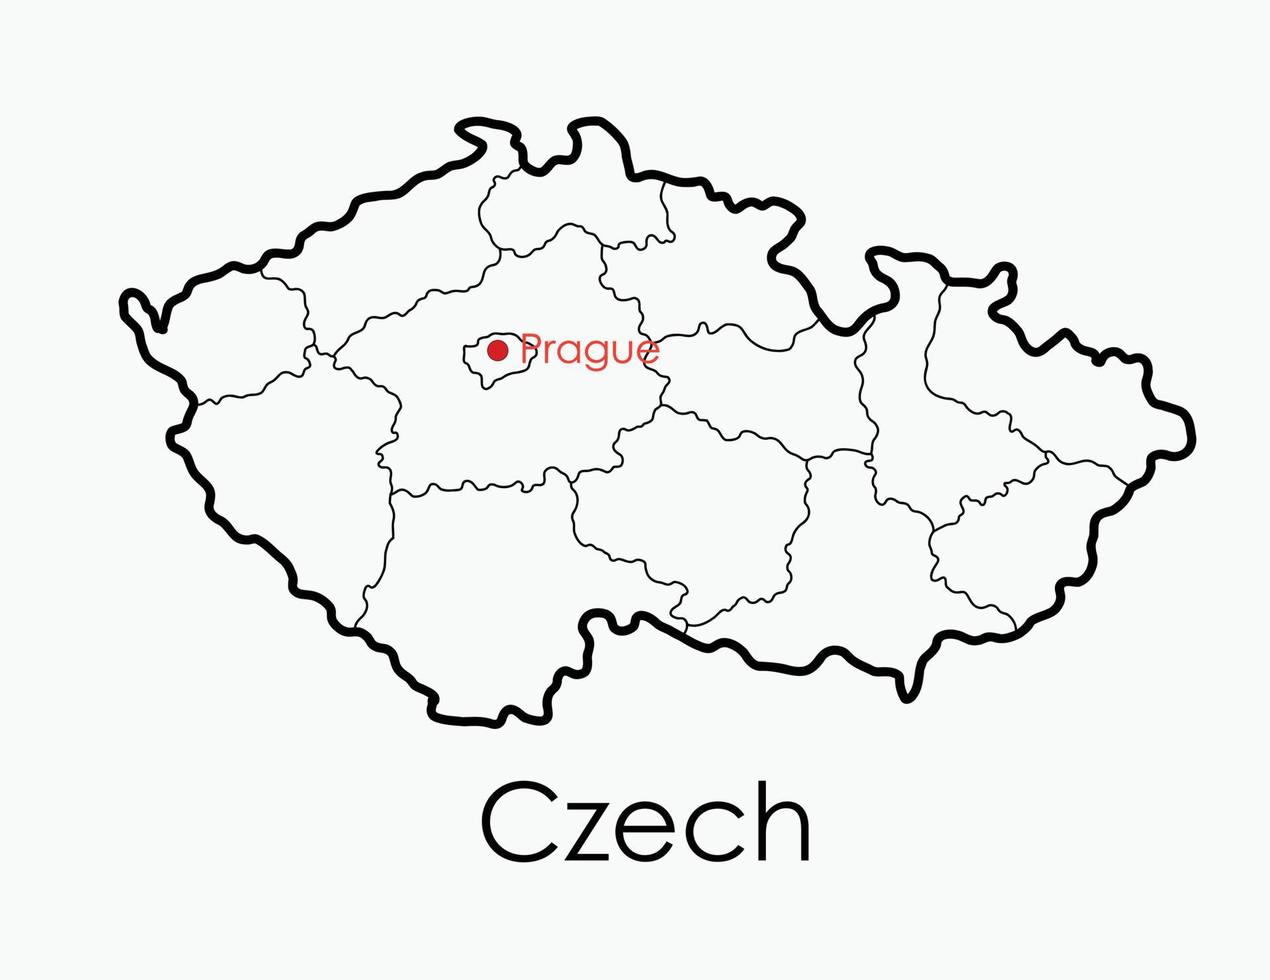 mappa ceca disegno a mano libera su sfondo bianco. vettore